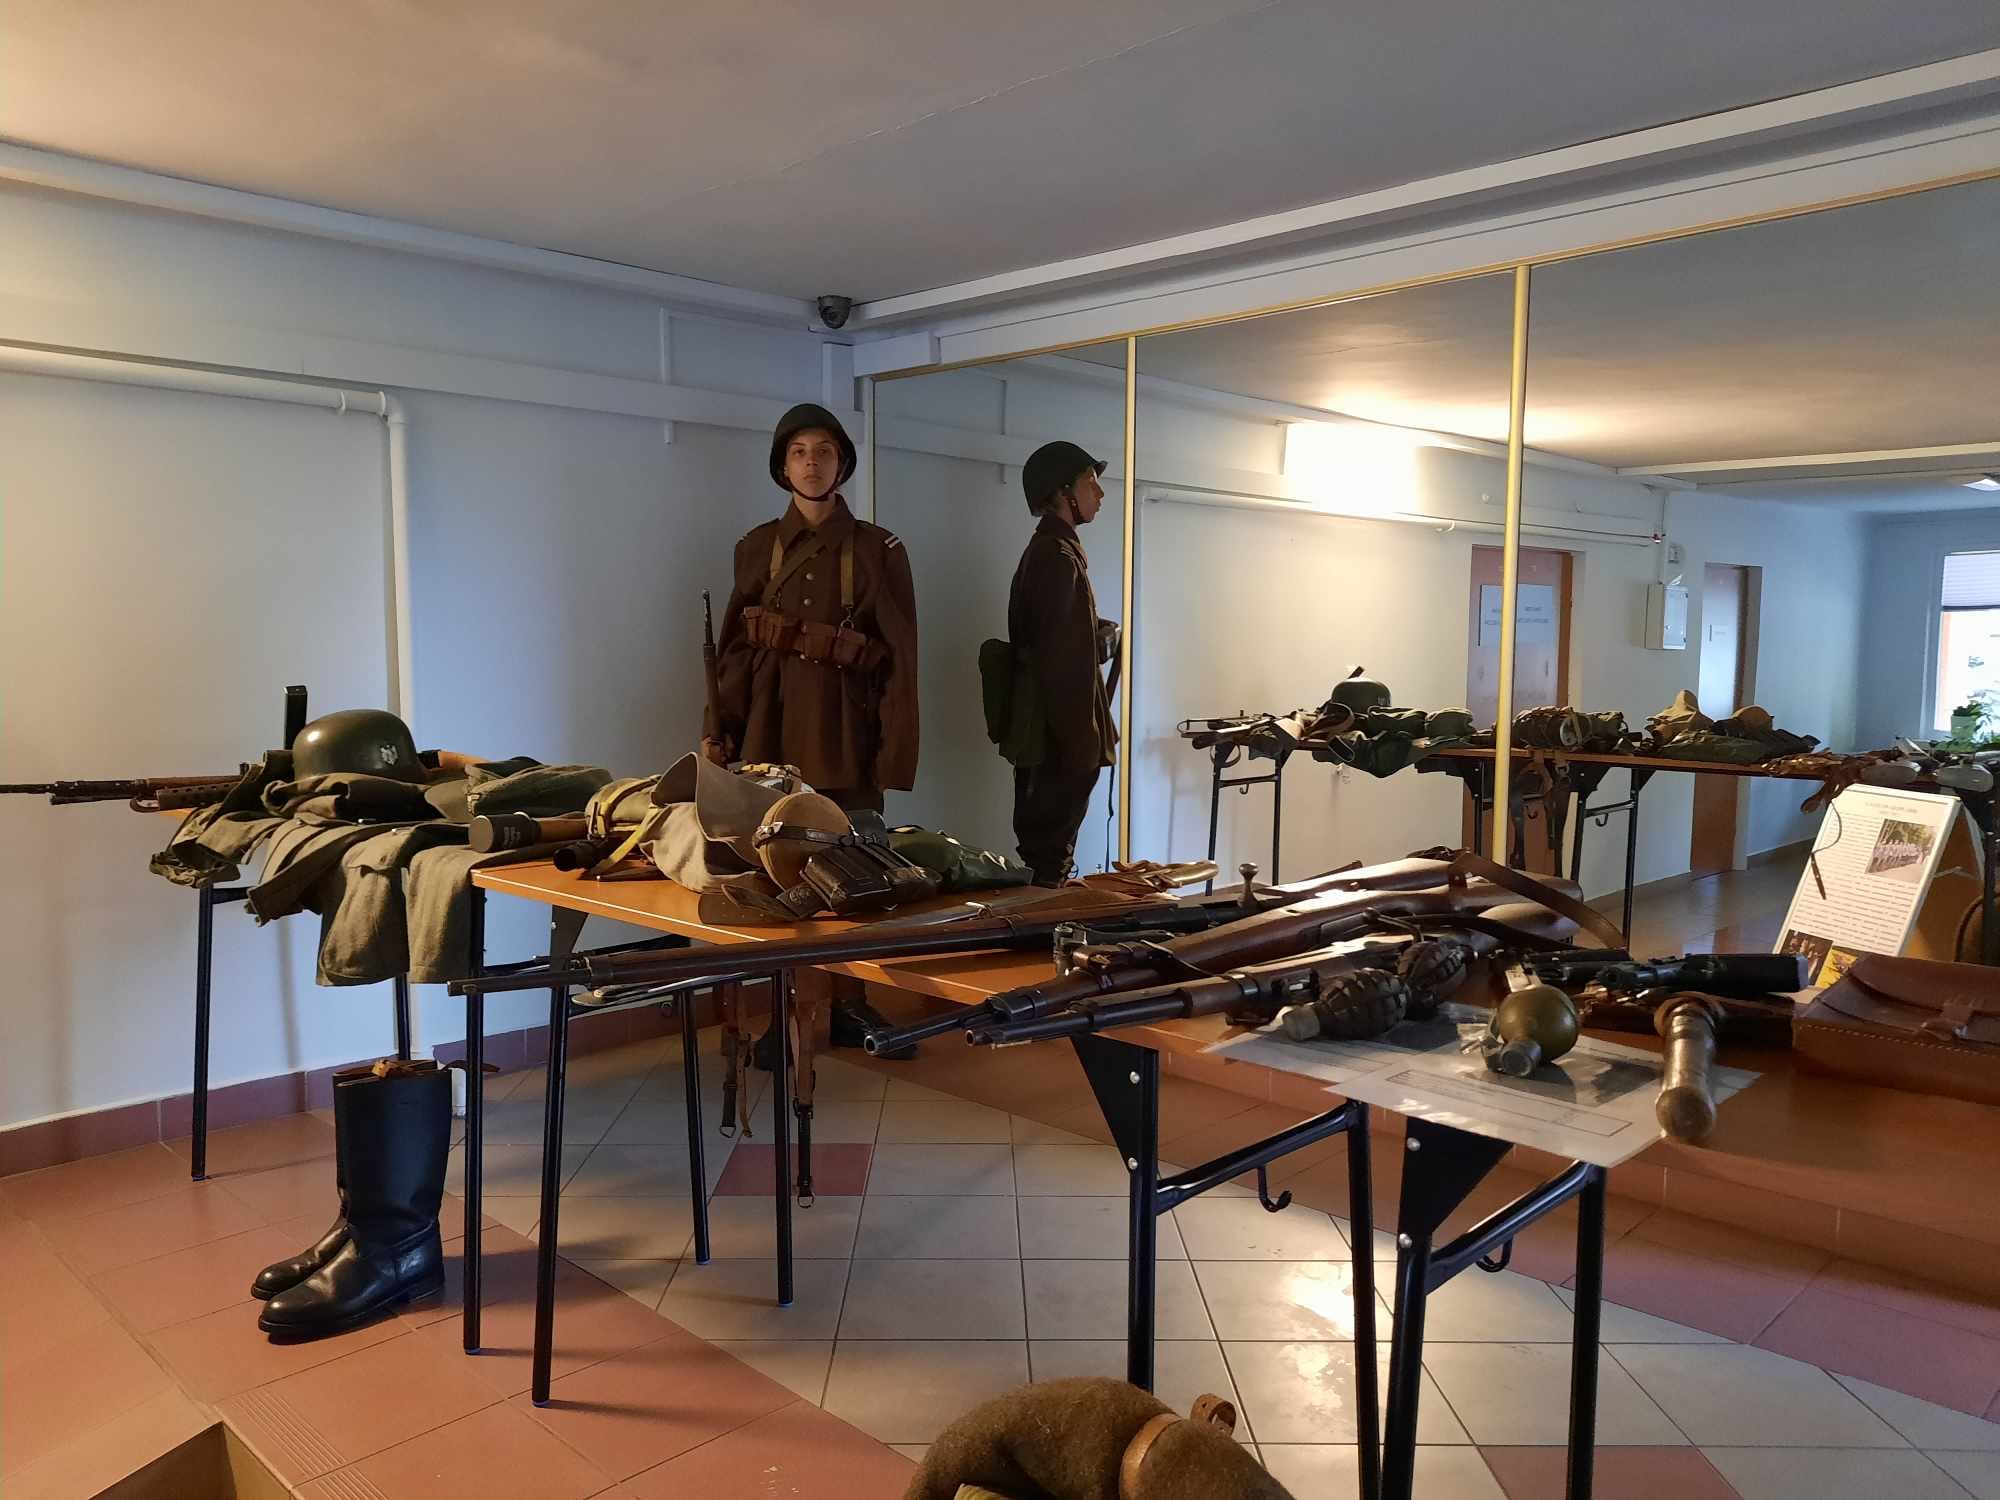 Grupa rekonstrukcji przygotowała ekspozycję dawnego sprzętu wojskowego.